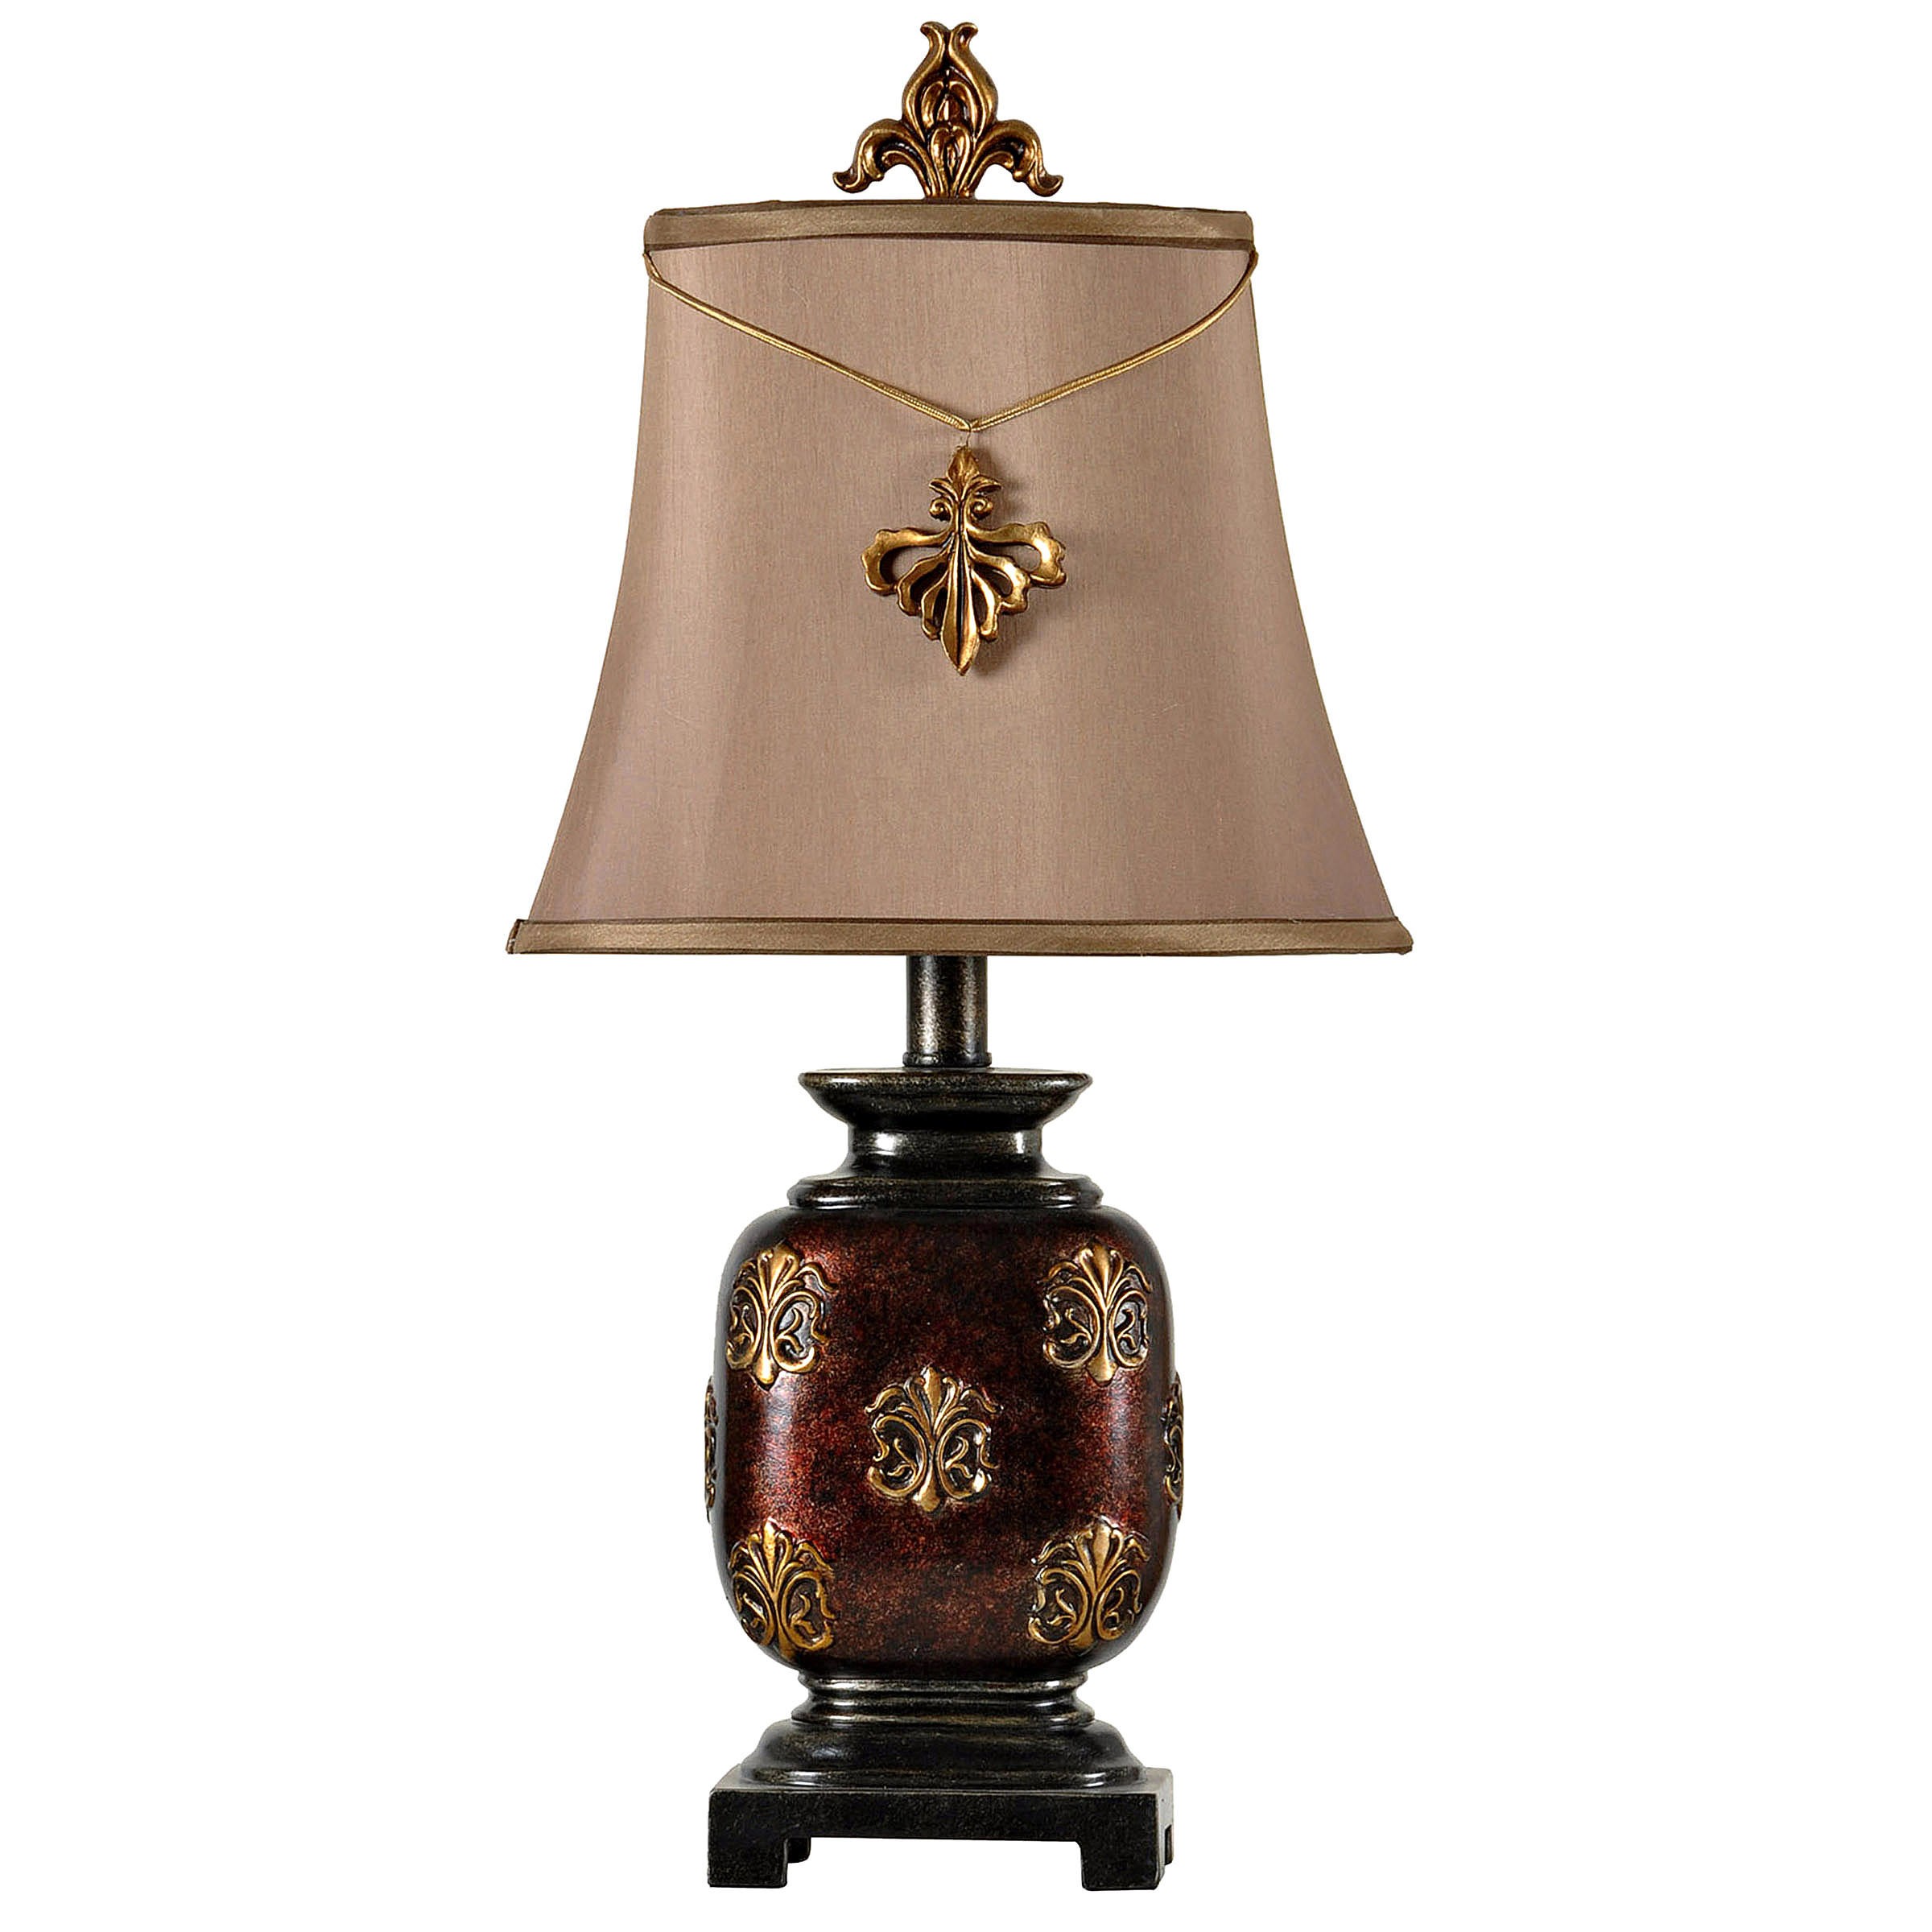 Maximus mini accent table lamp with fleur de lis pendant